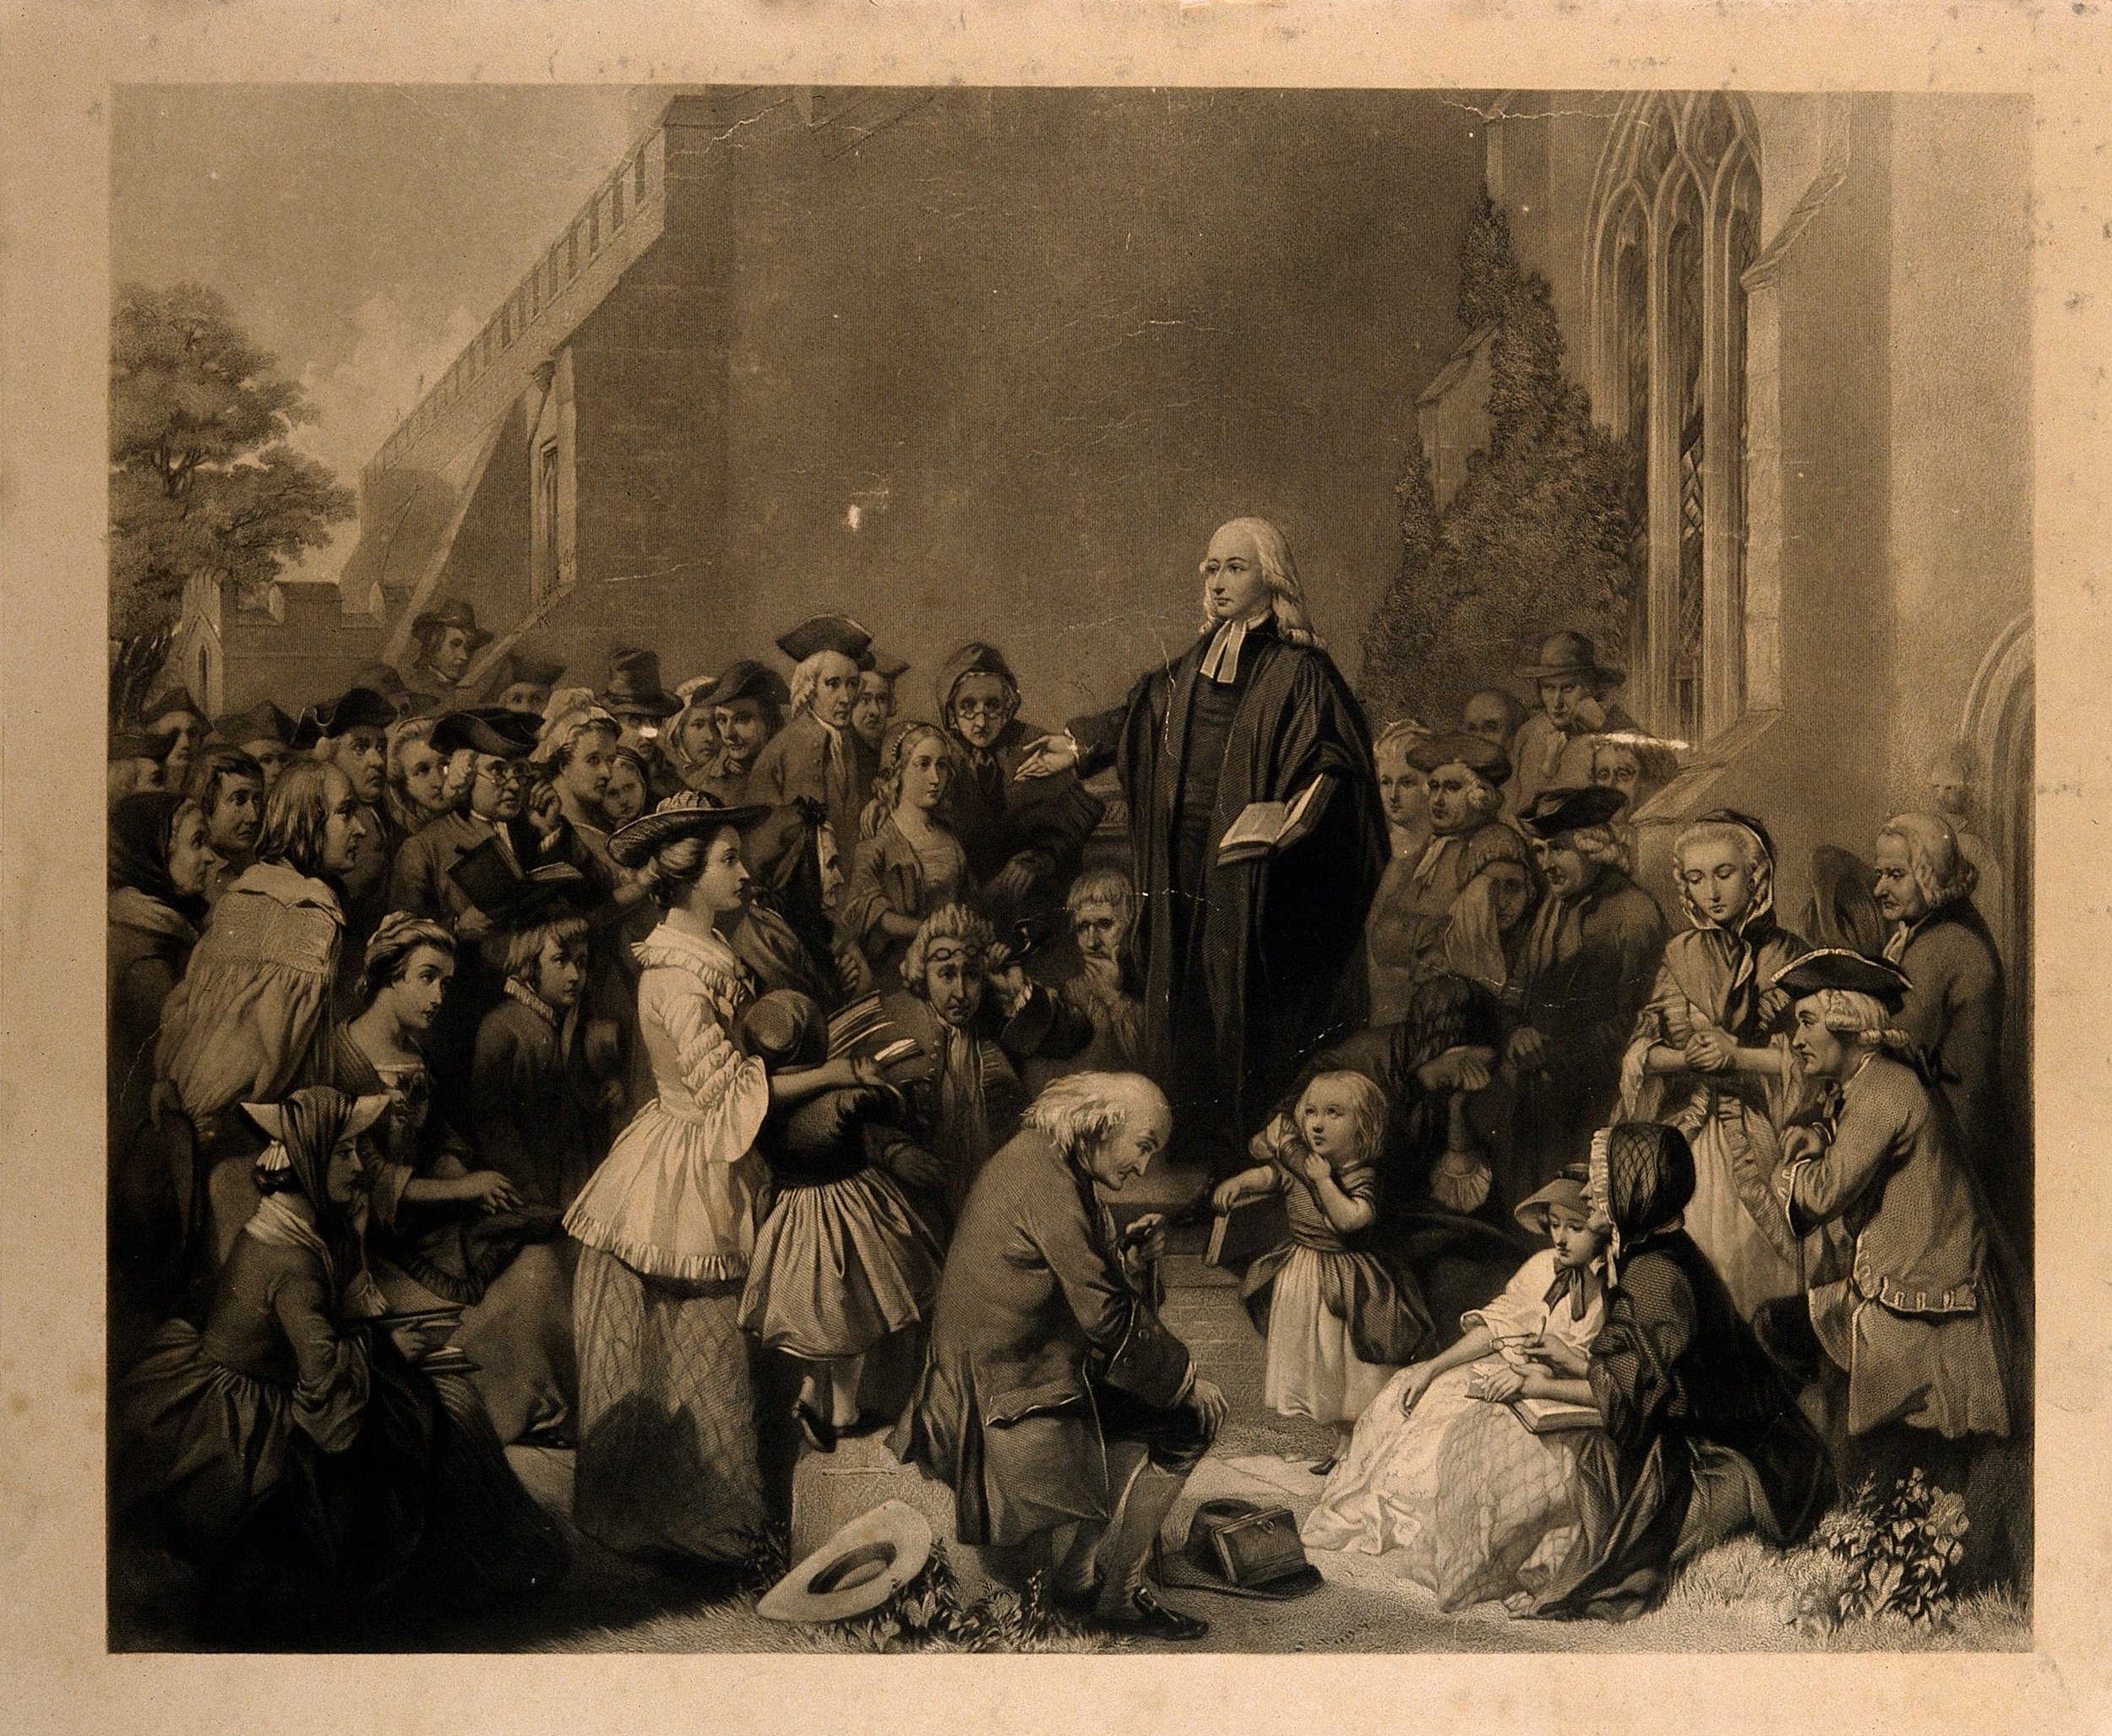 John Wesley, the First Great Awakening